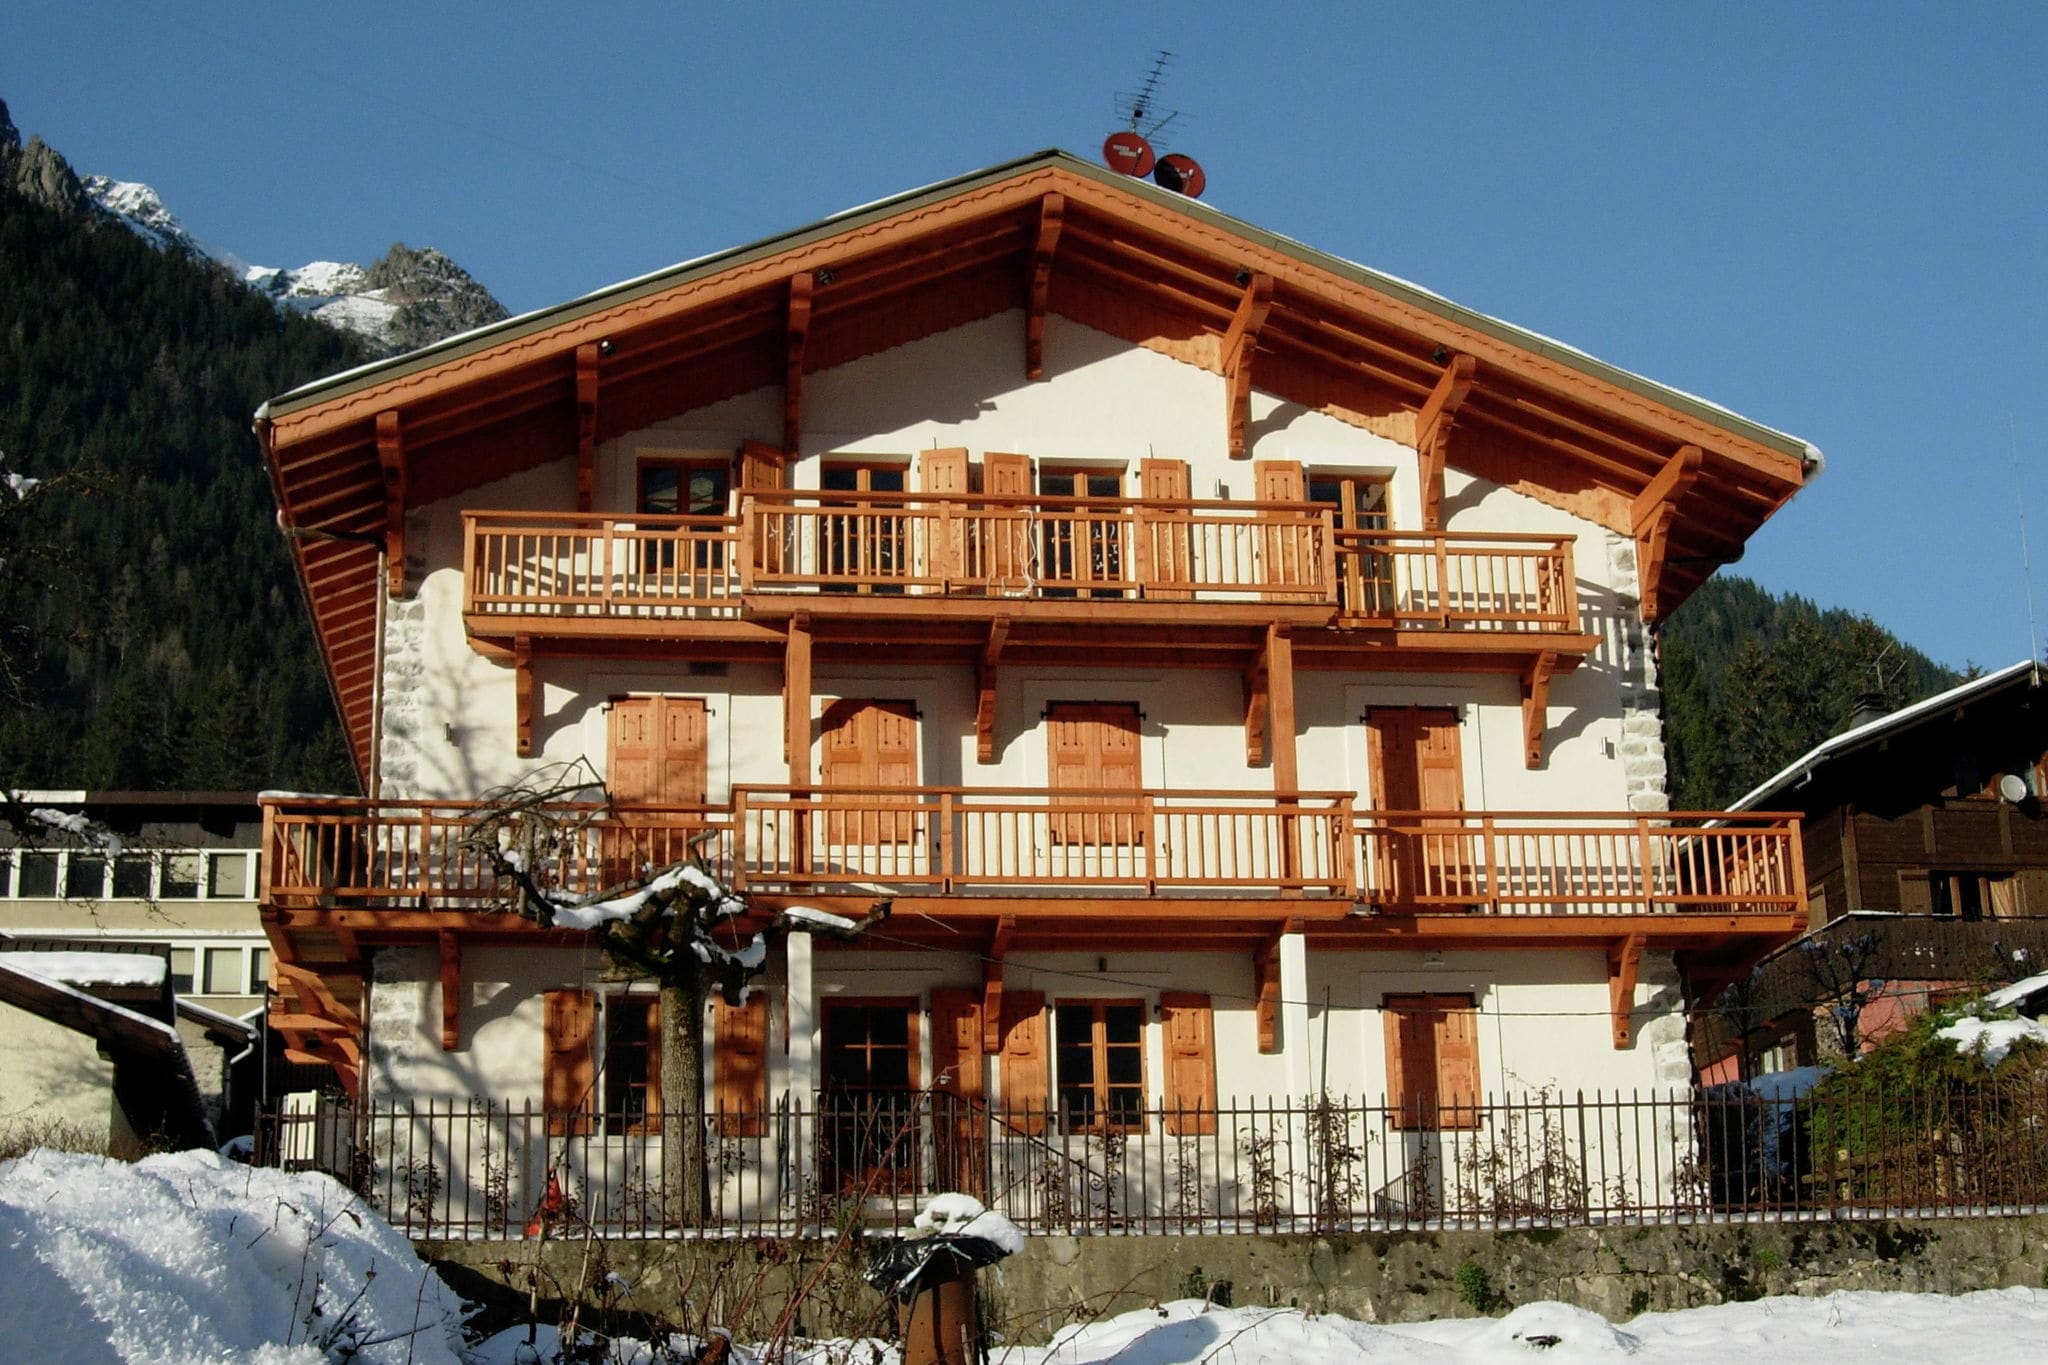 Ferienwohnung in Chamonix, Frankreich mit Mont-Blanc-Blick